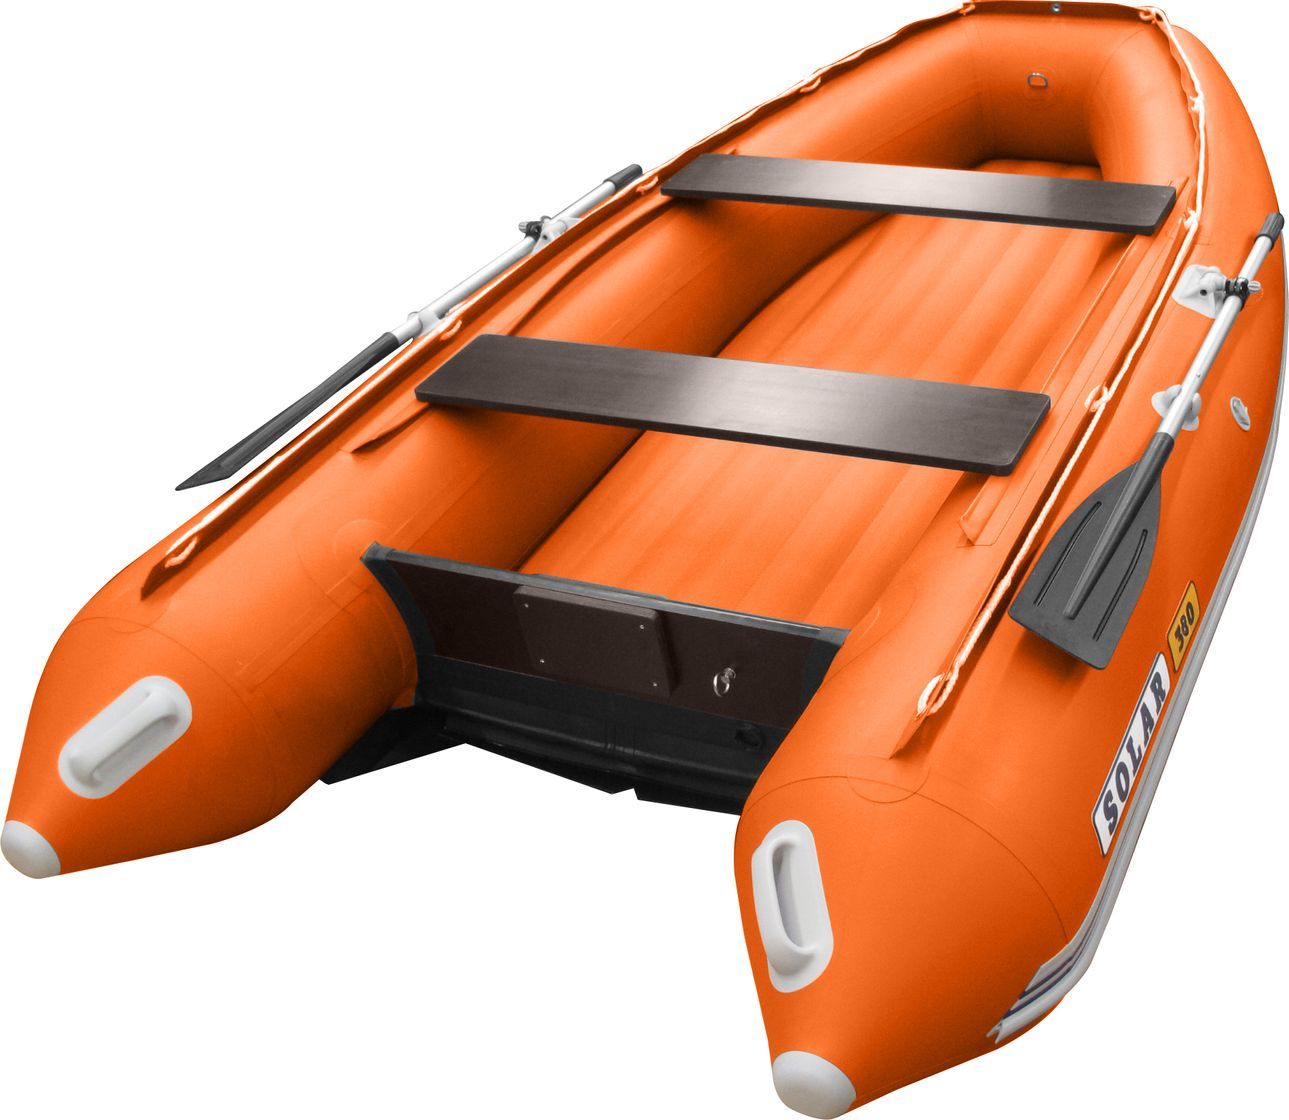 Надувная лодка ПВХ SOLAR-350 К (Максима), оранжевый SLR350k_max_orange экономь по крупному секреты больших корпораций легко применимые для малого и среднего бизнеса андреева к в